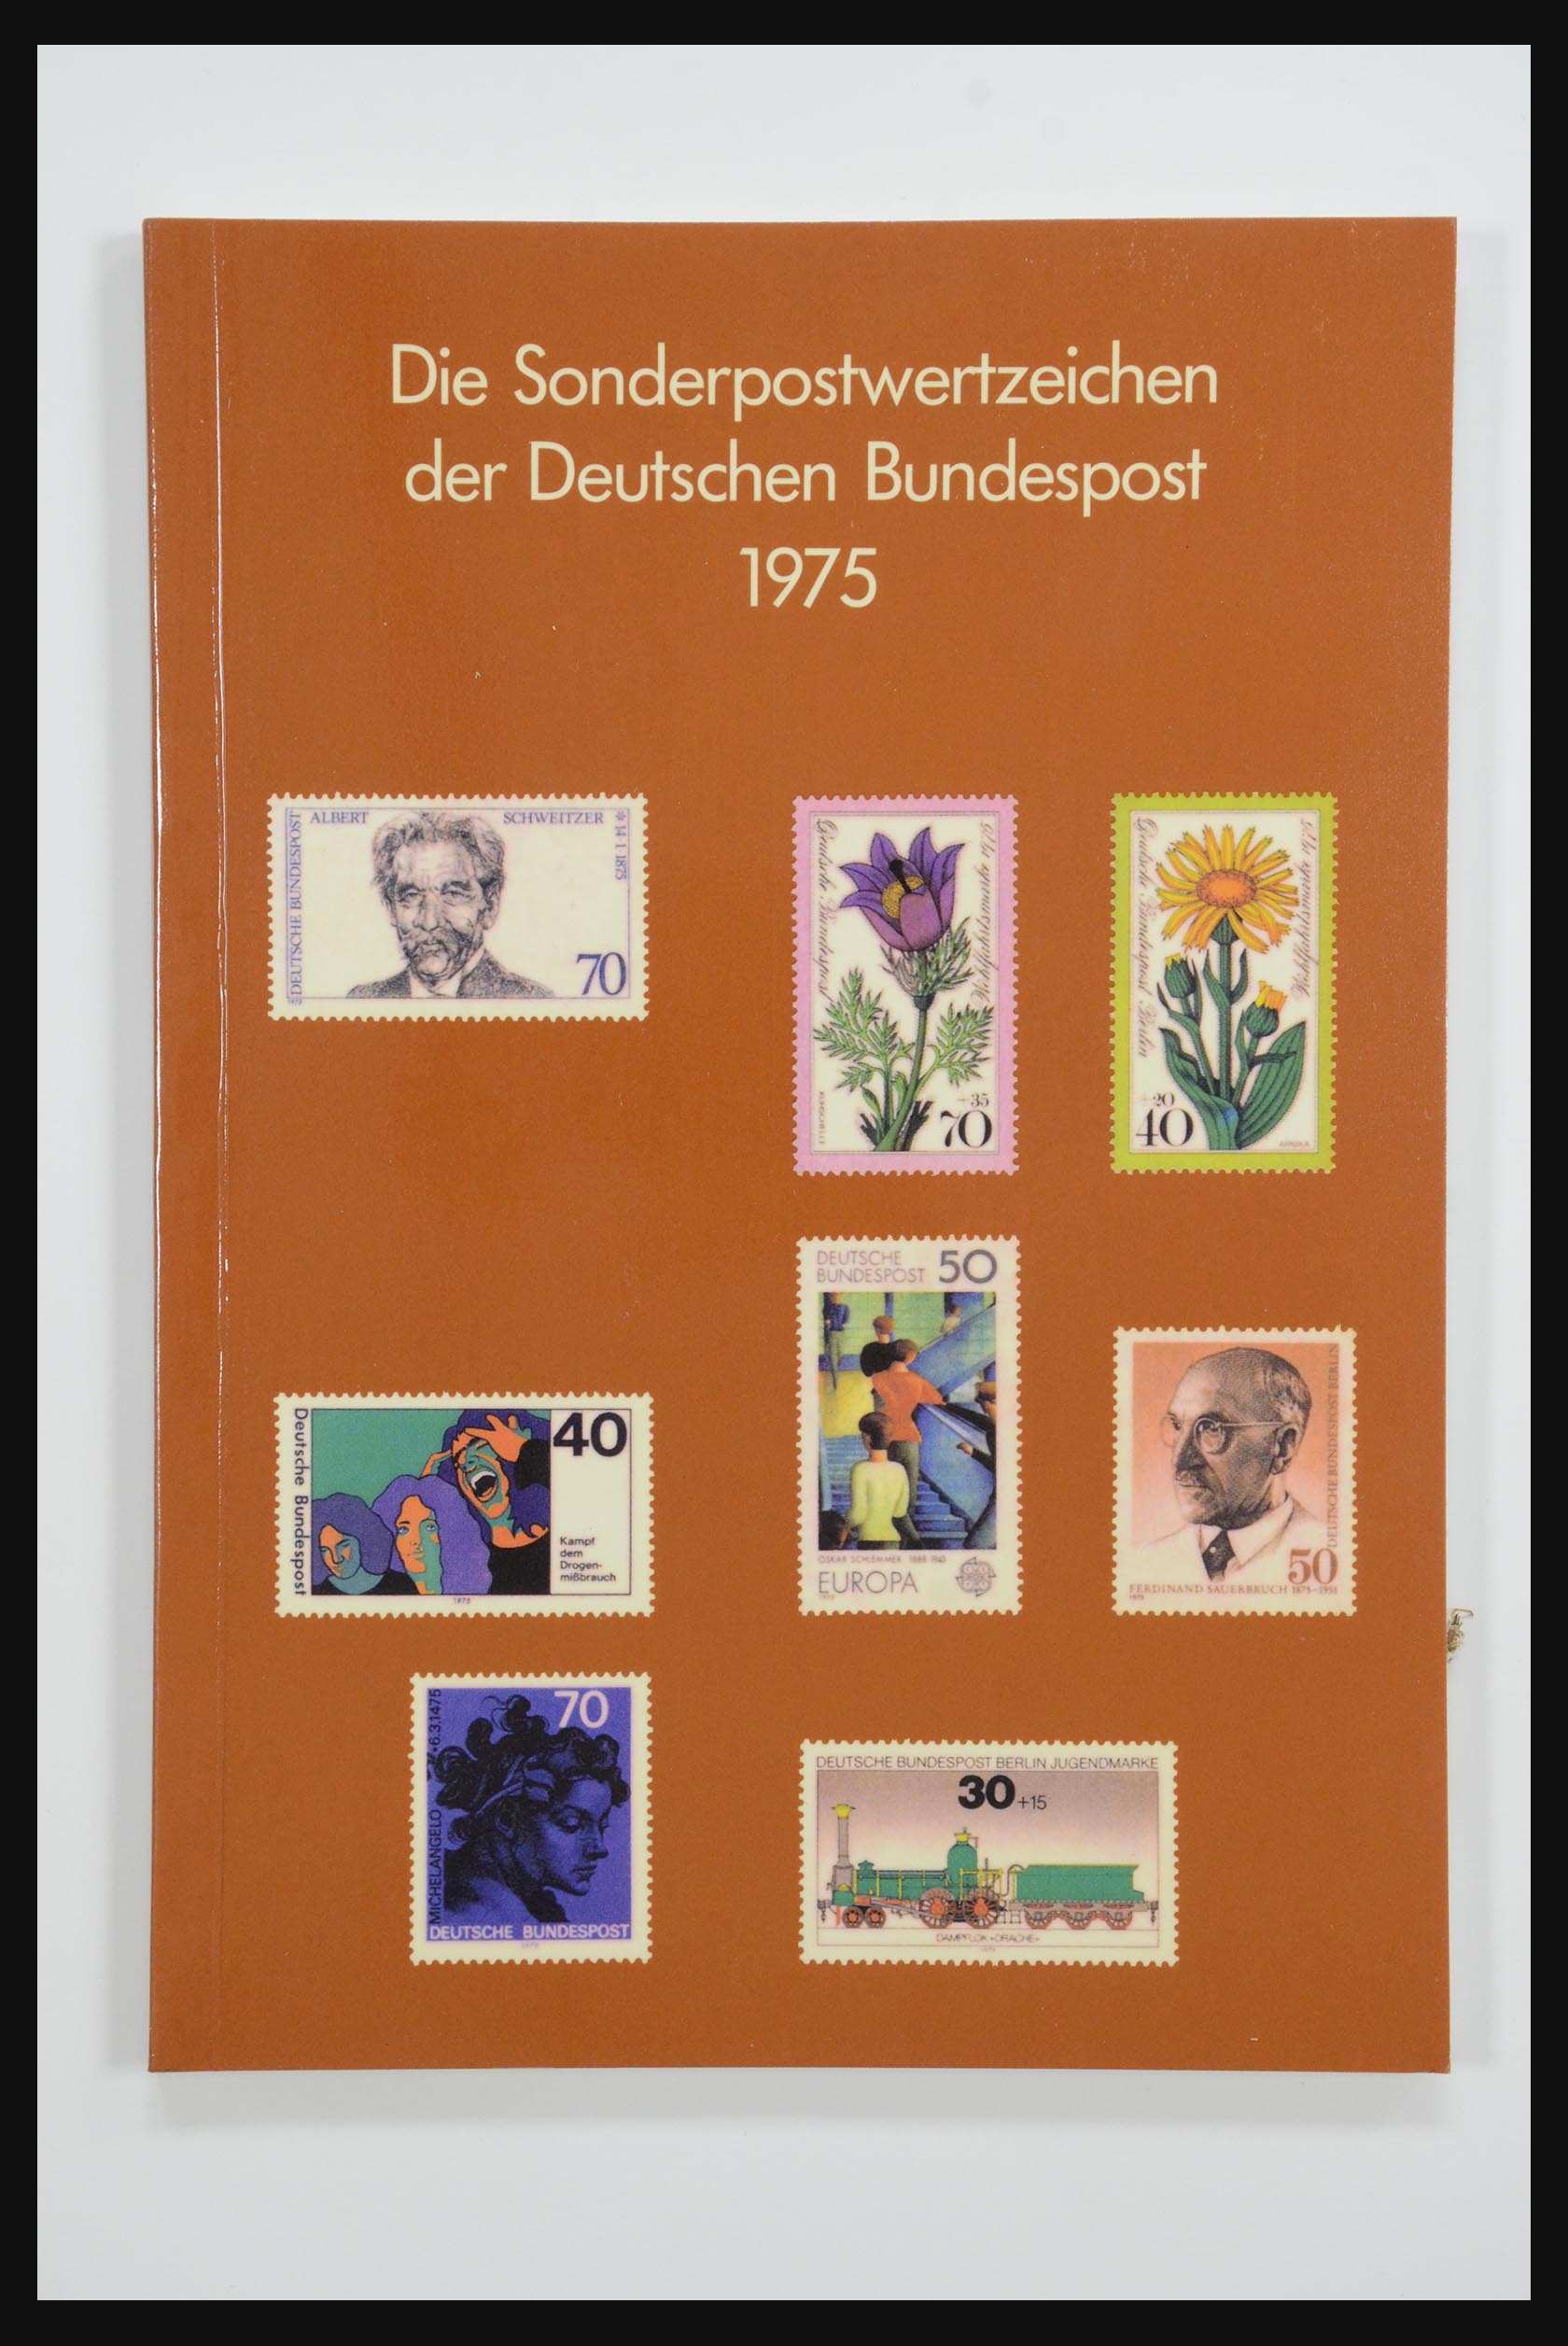 31836 003 - 31836 Bundespost jaarboeken 1974-1999.